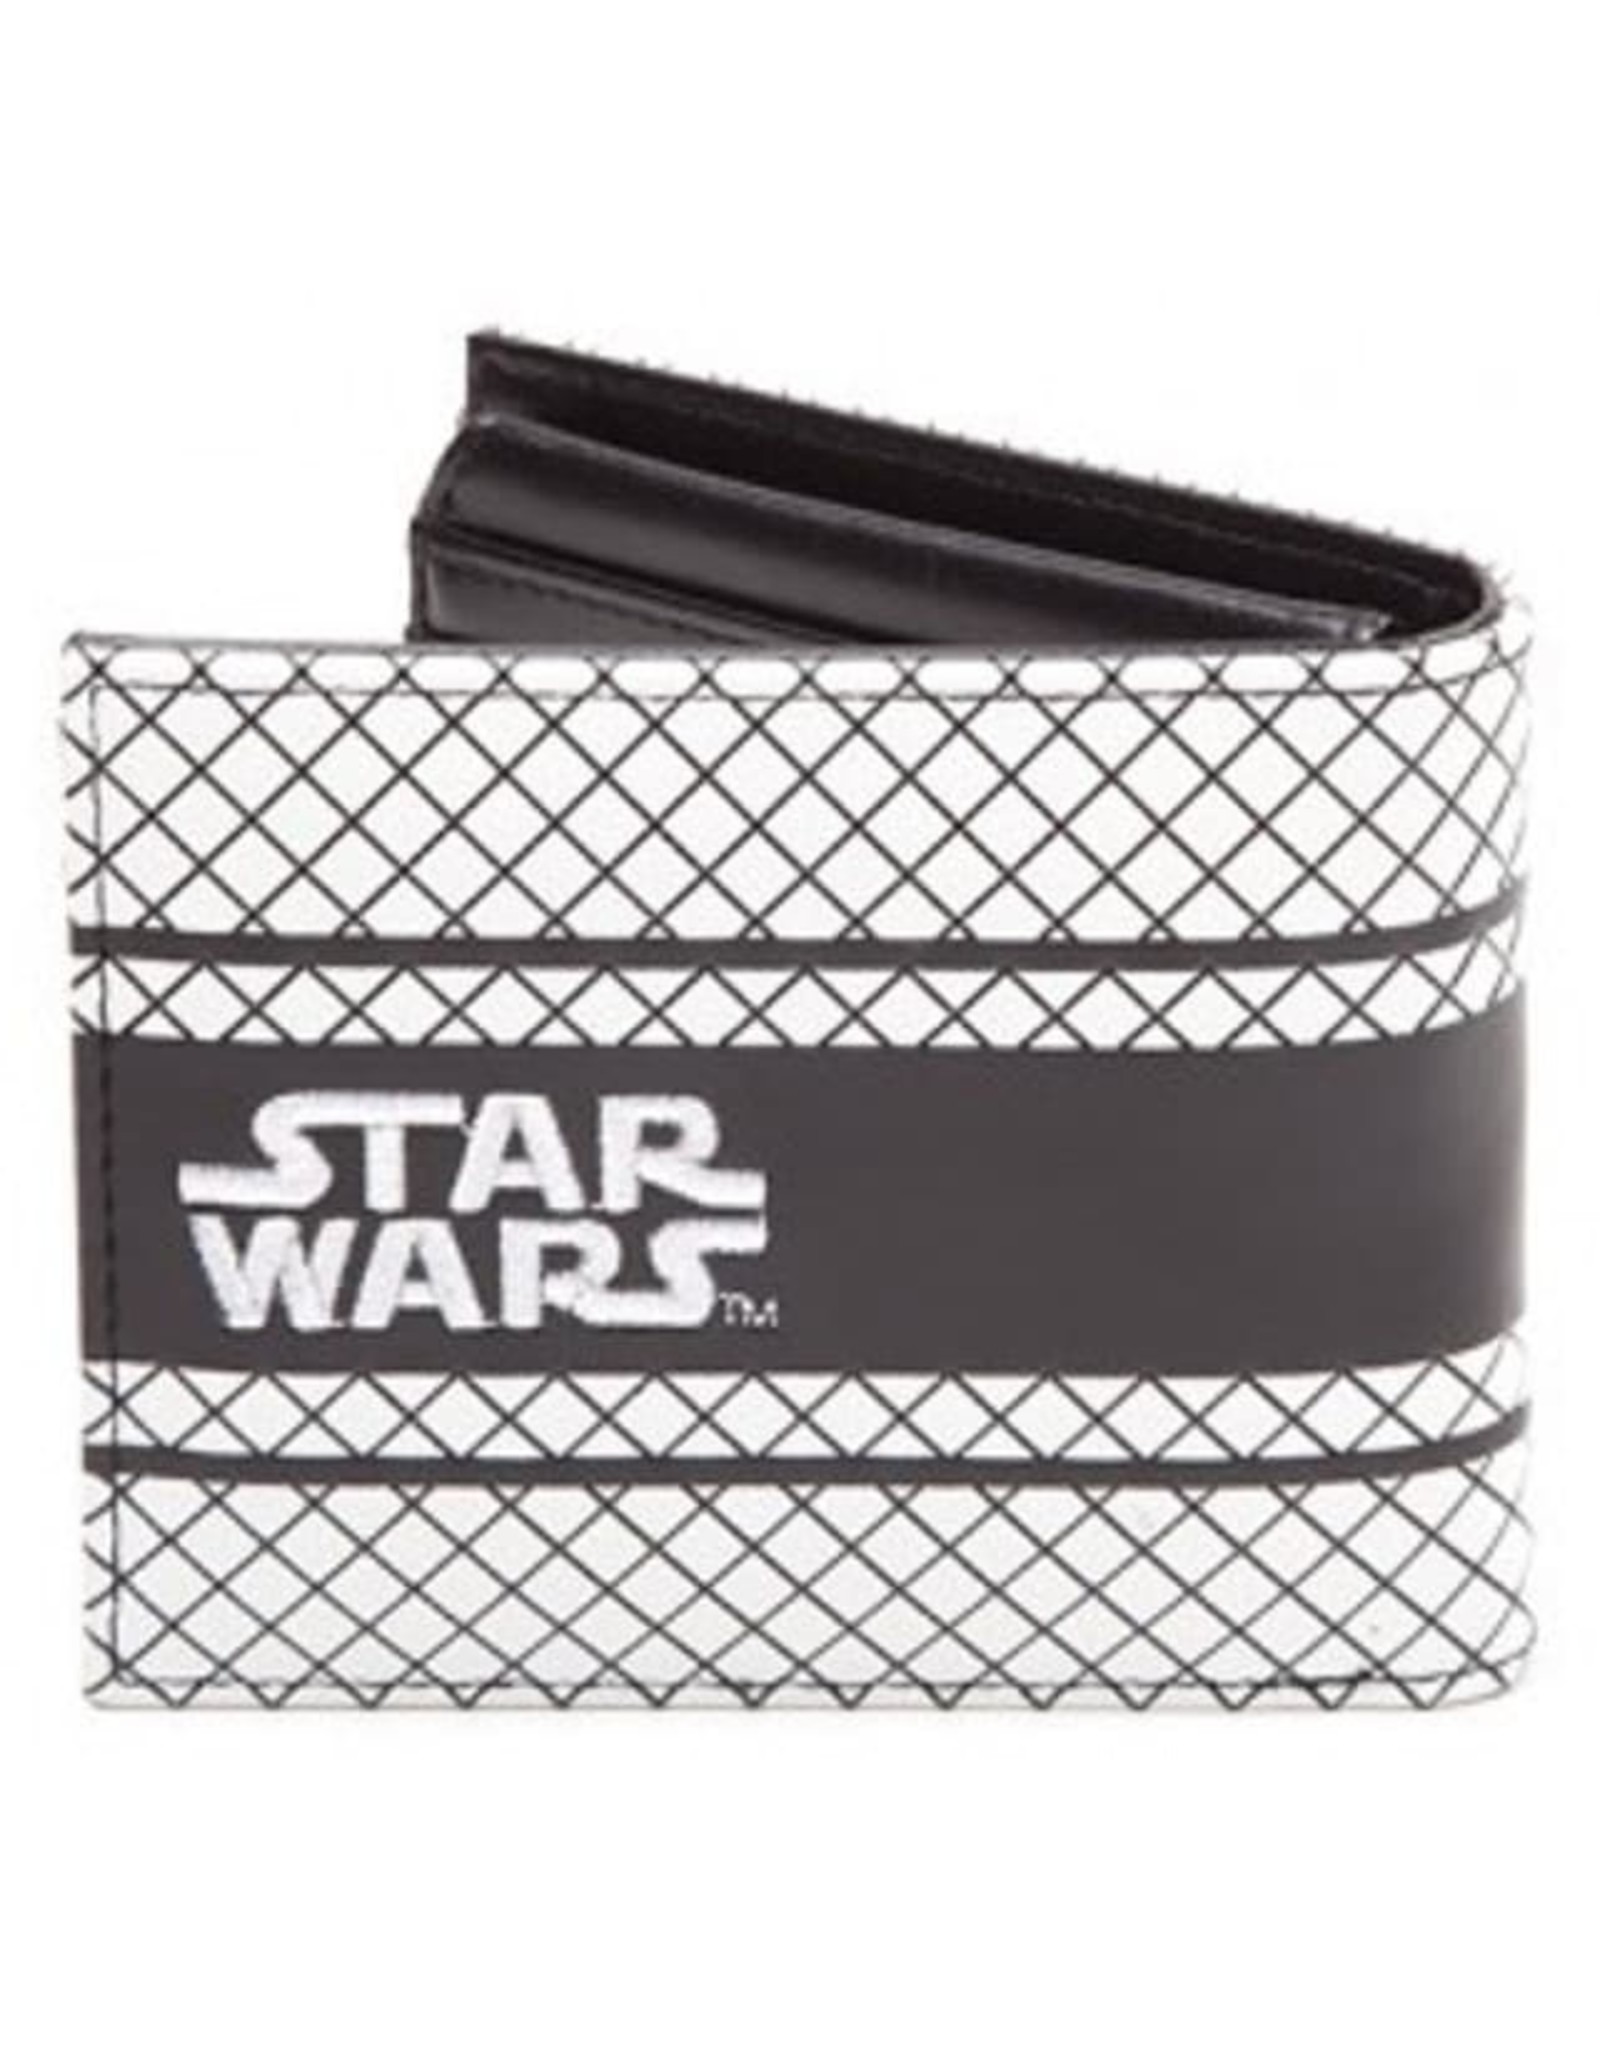 Star Wars Star Wars tassen - Star Wars Empire portemonnee